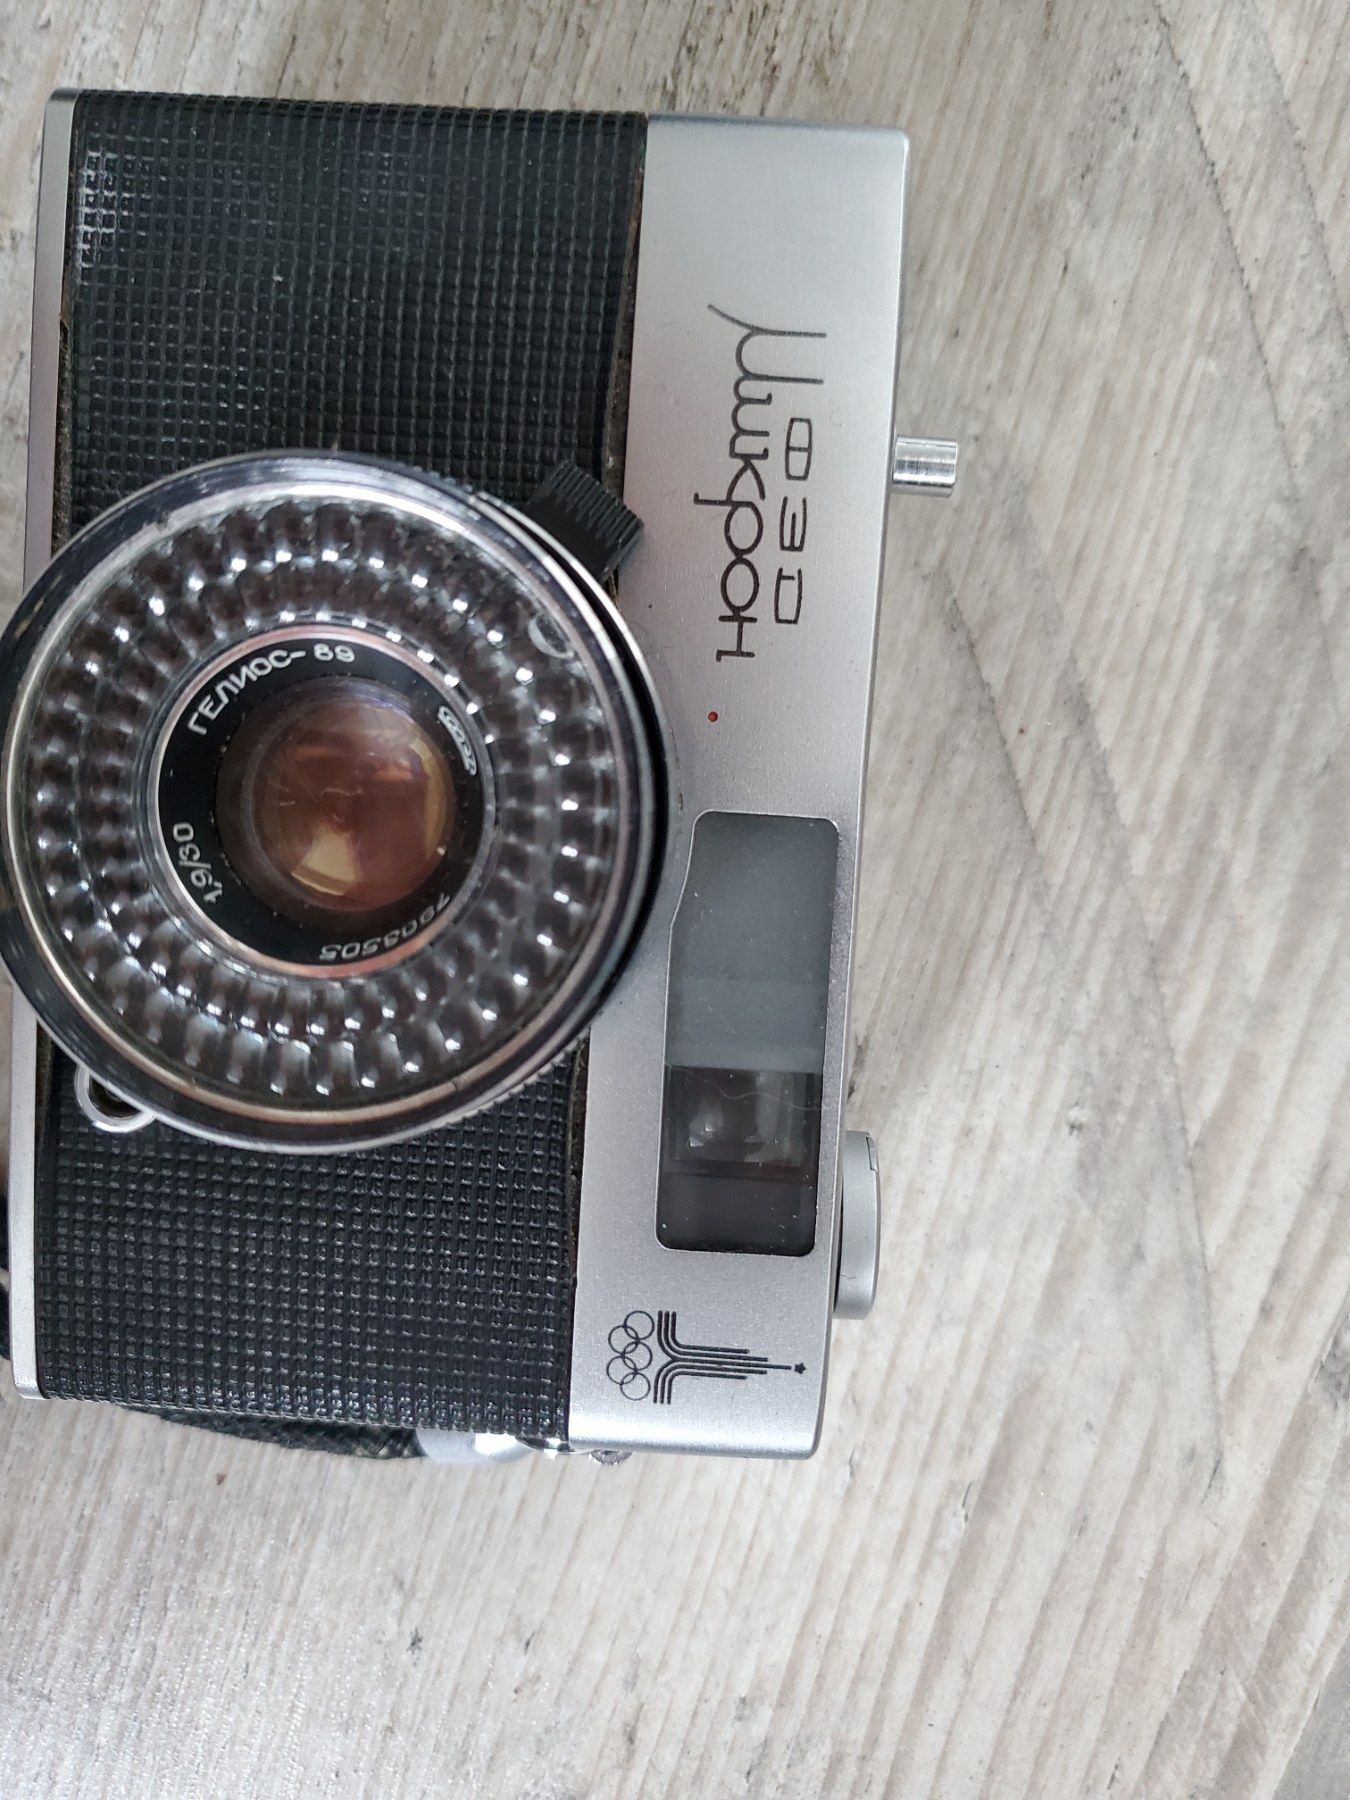 Na sprzedaż analogowy aparat fotograficzny Fed mikron Olimpiada 1980